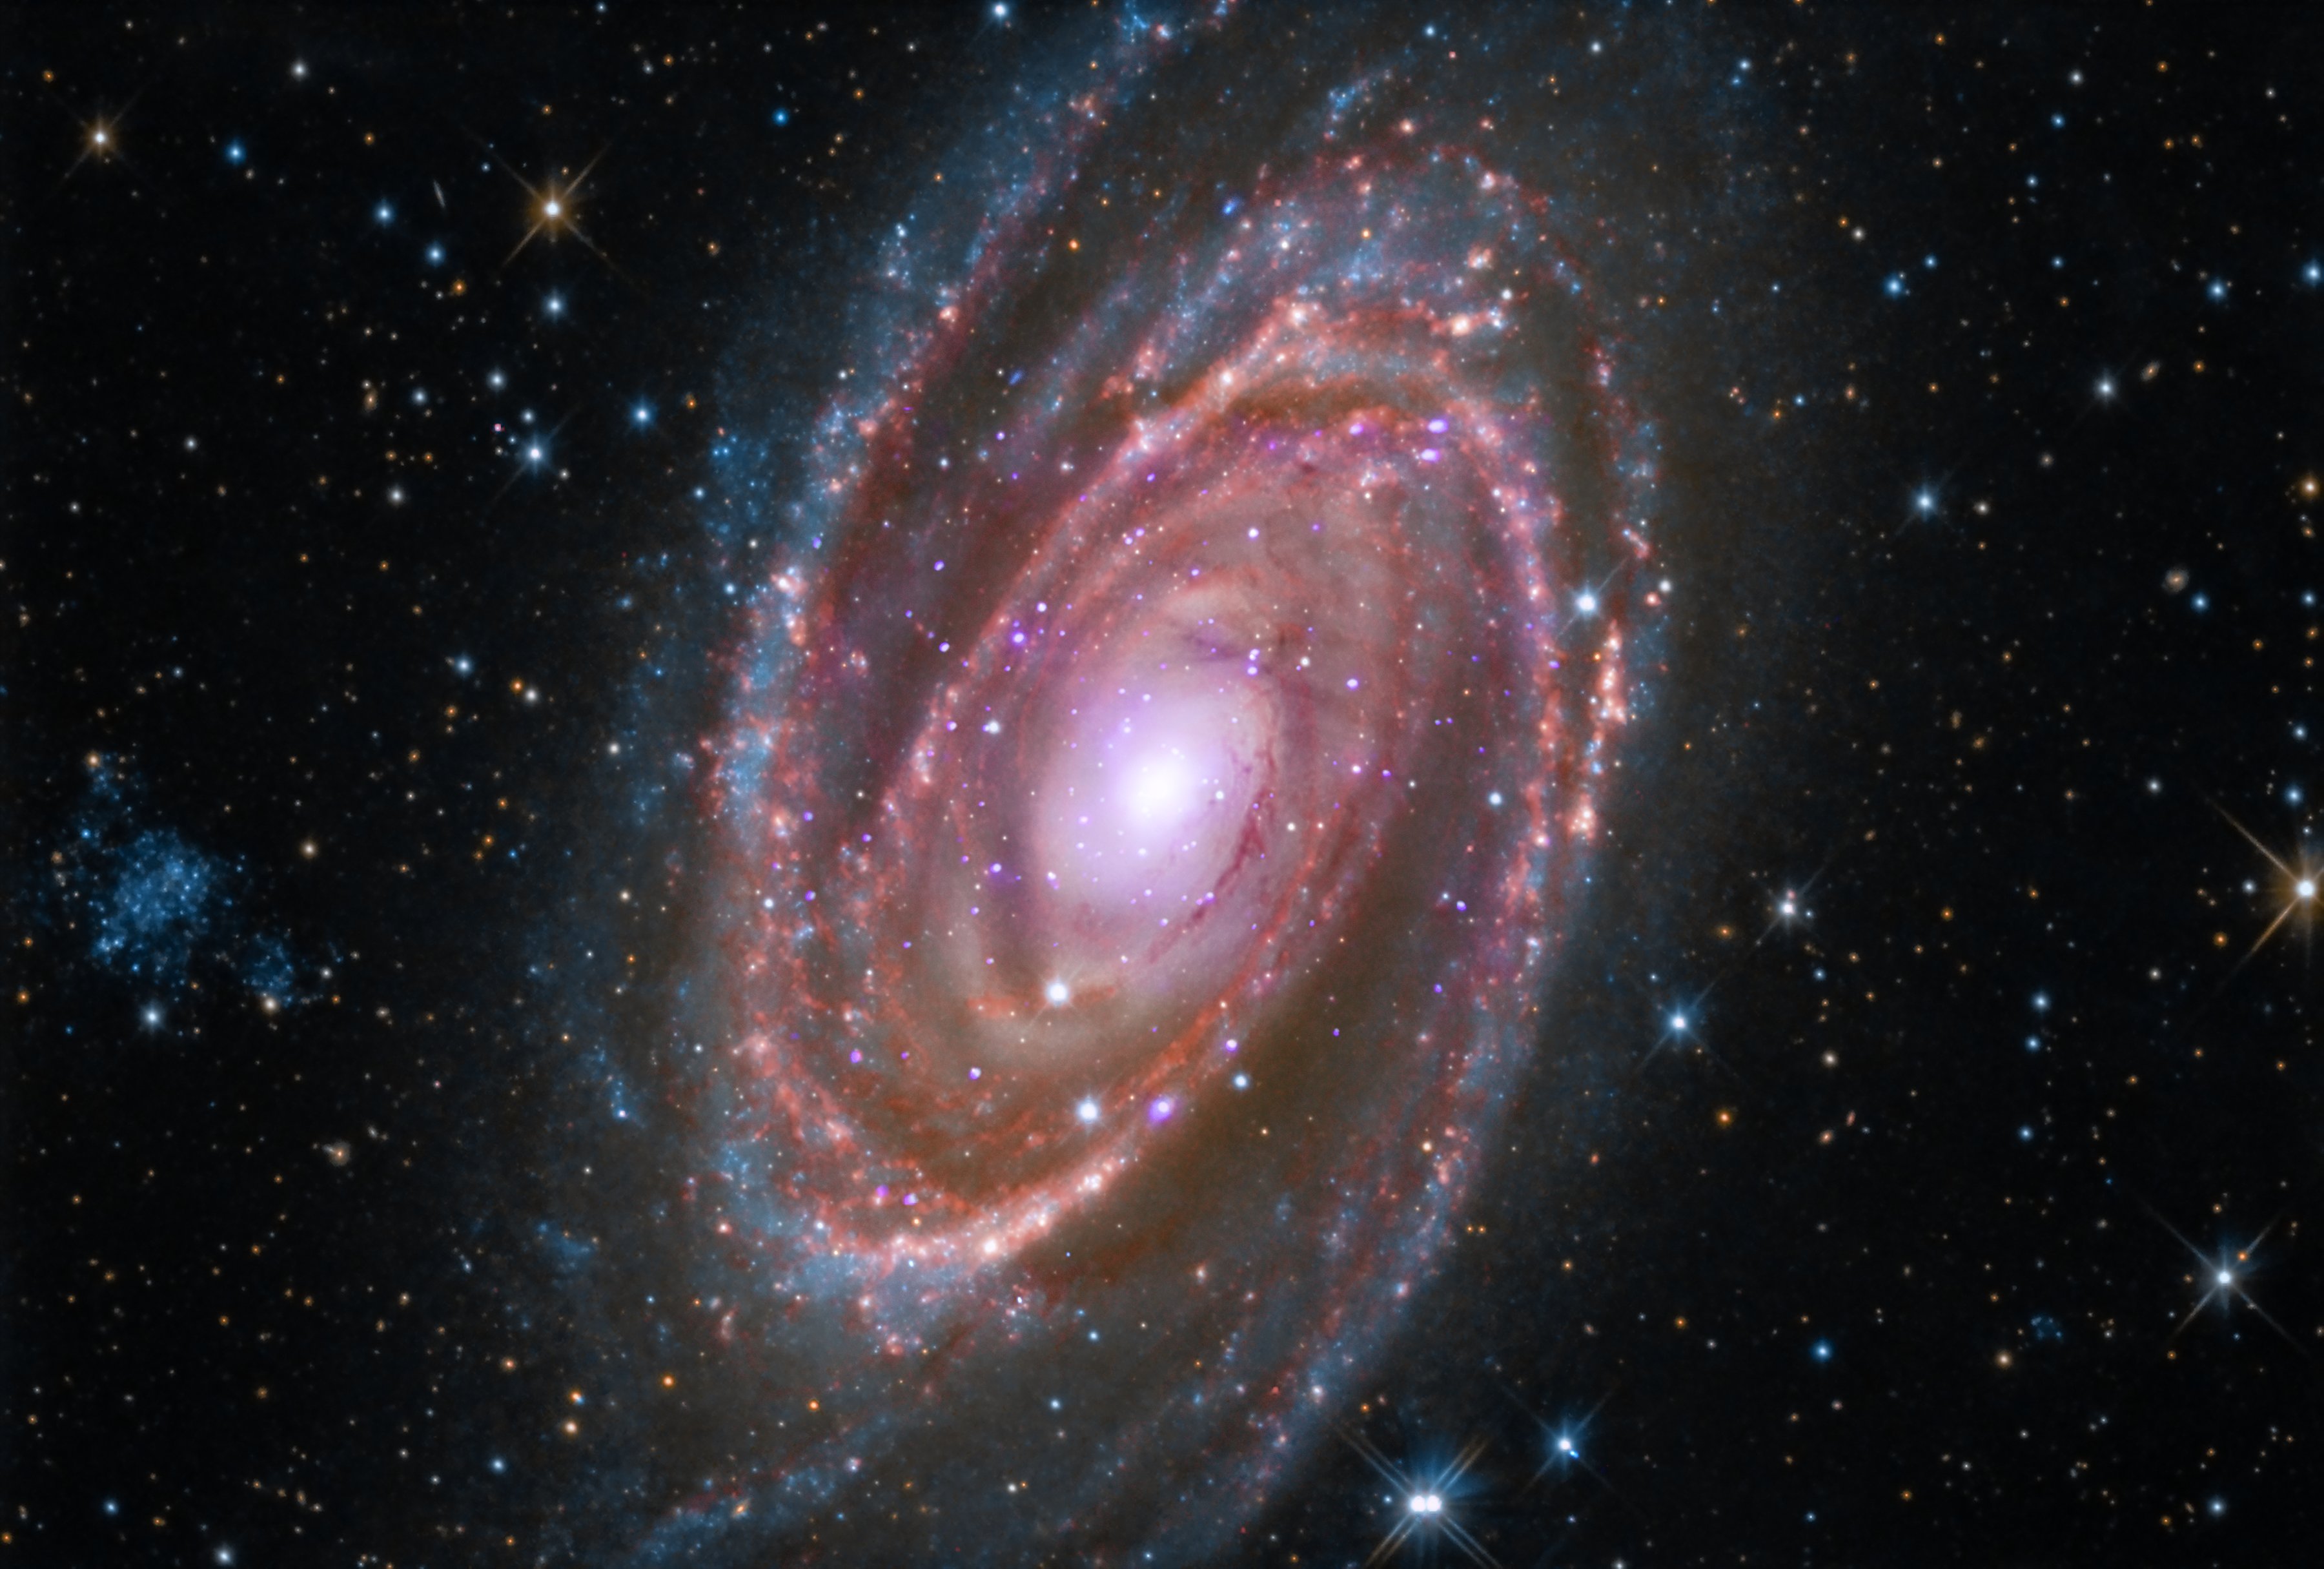 Спиральная галактика M81 расположена примерно в 12 миллионах световых лет от Земли.